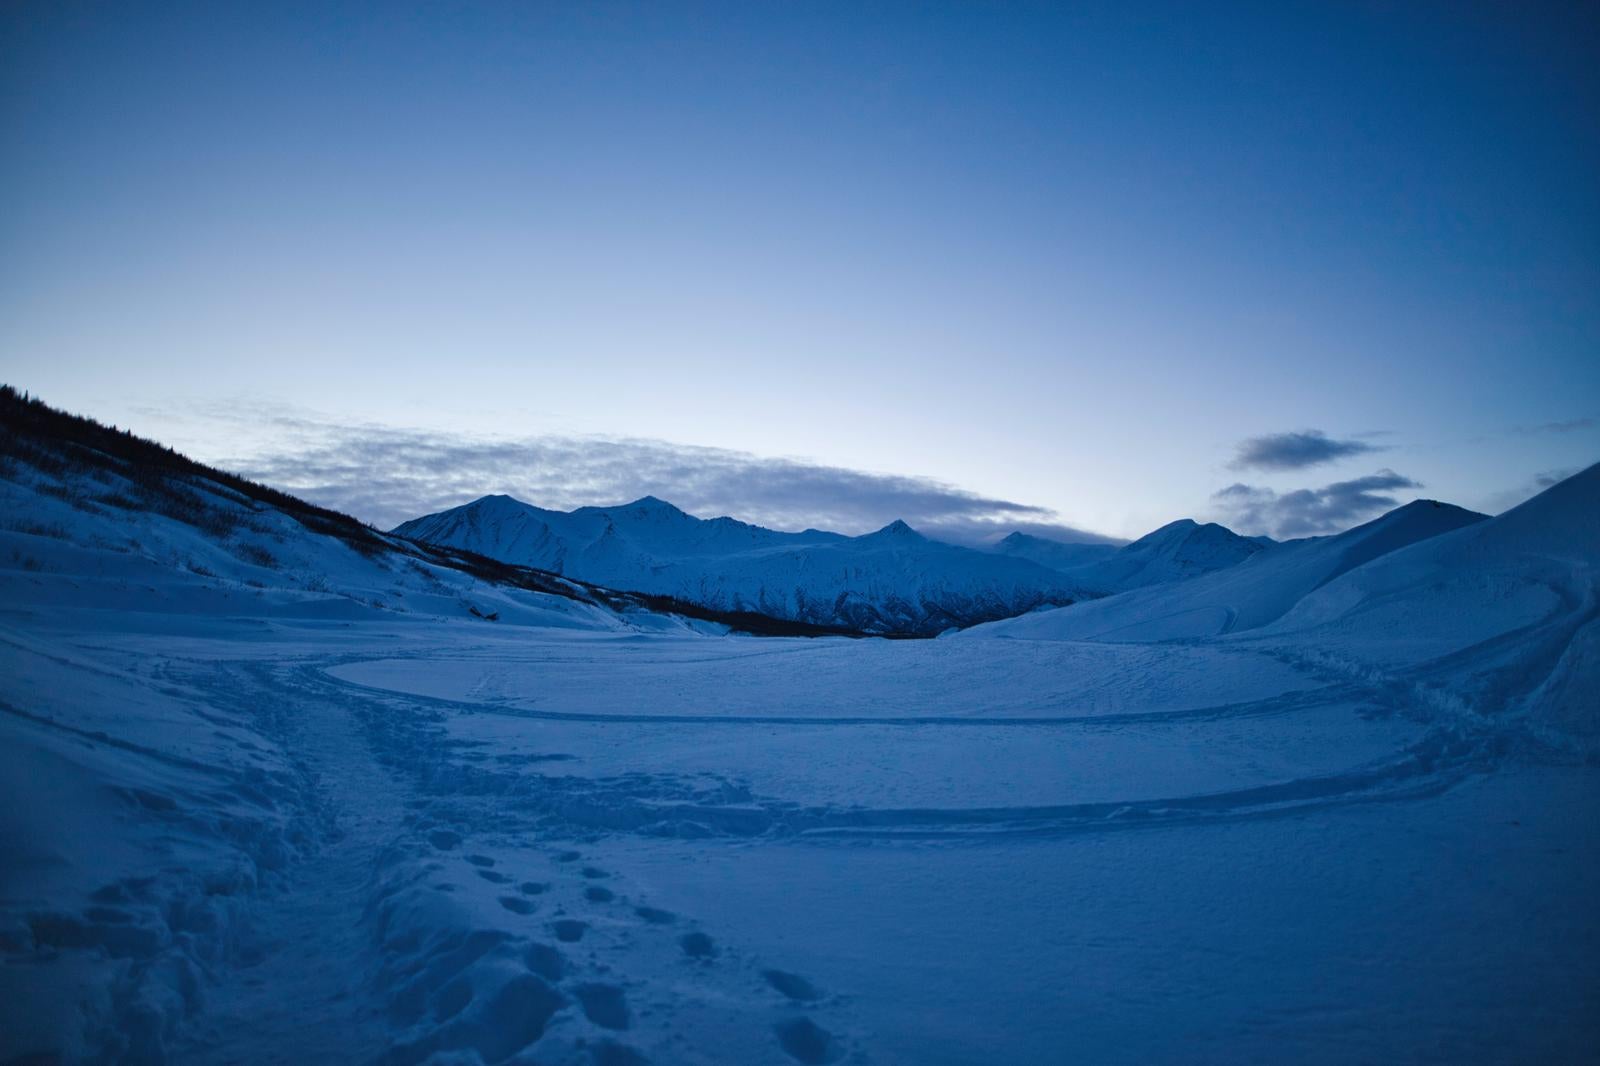 「雪原の足跡と雪に覆われた山々が広がり」の写真